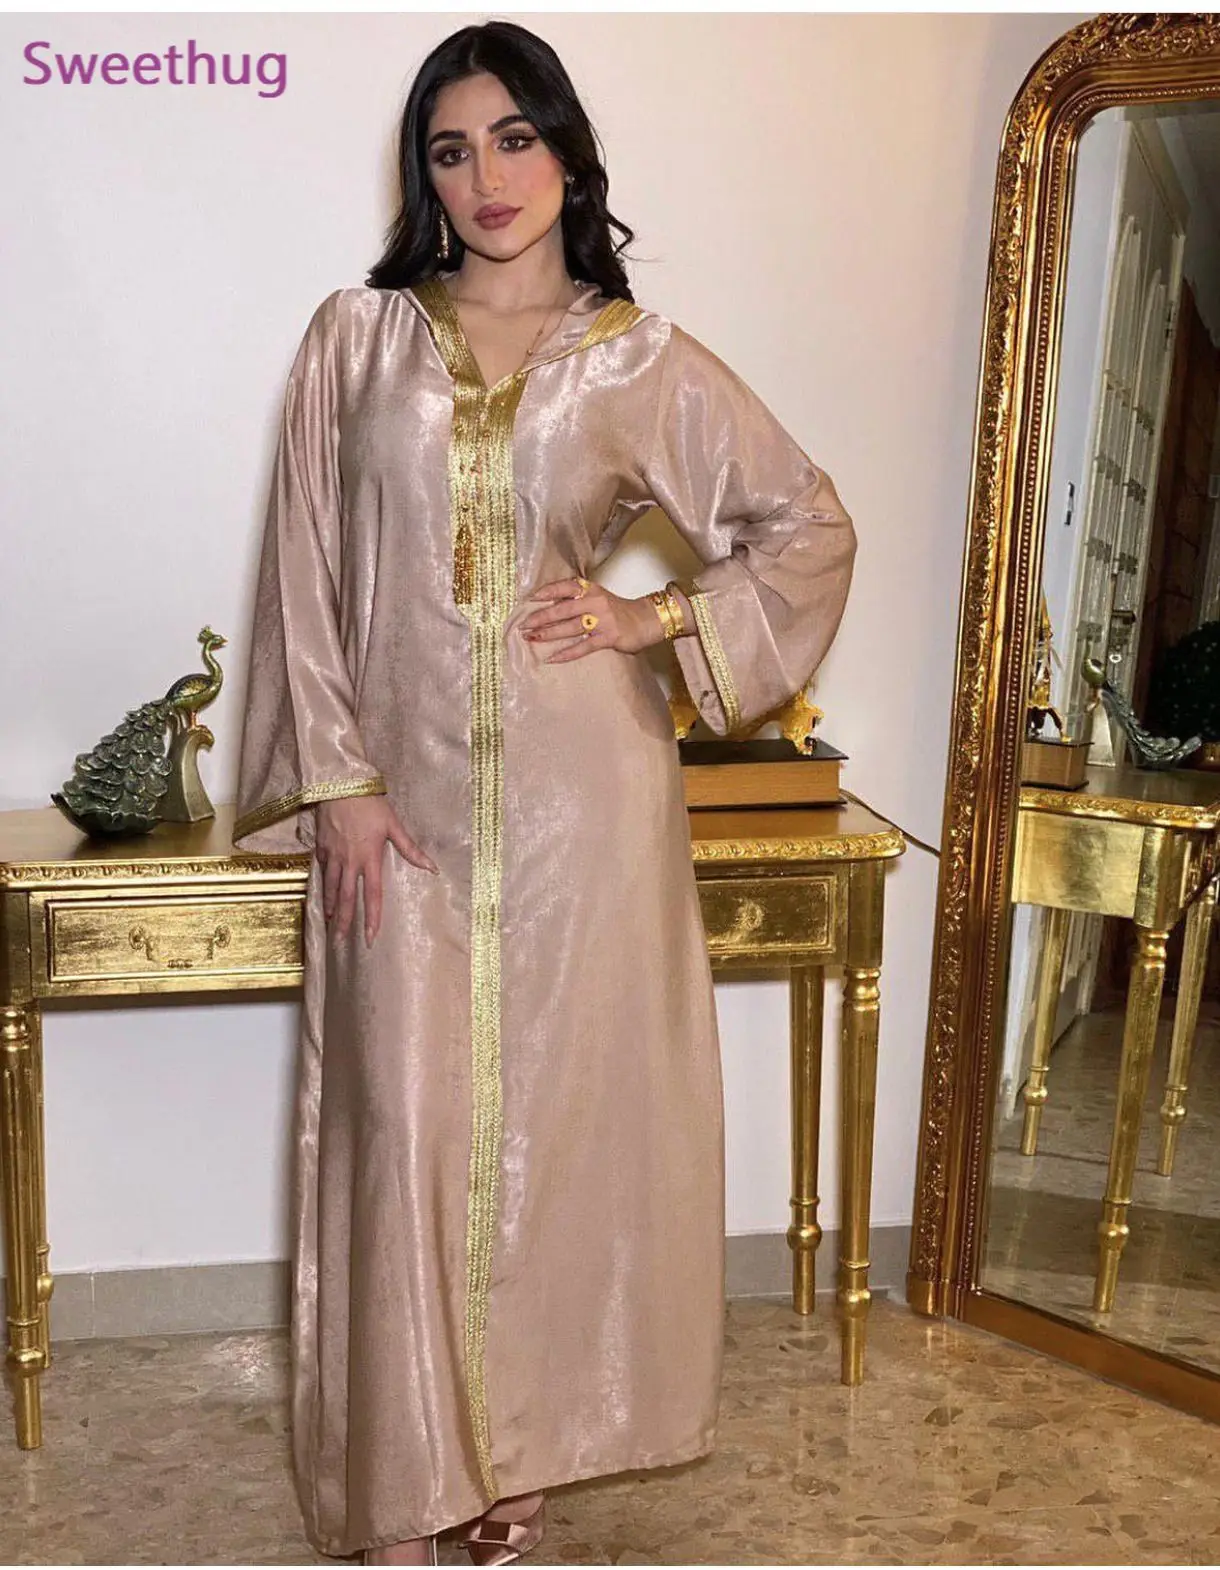 Женское платье-Абая Mayata, арабское, мусульманское, с капюшоном, цвета шампанского, марокканского кафтана, осень 2020, 2020